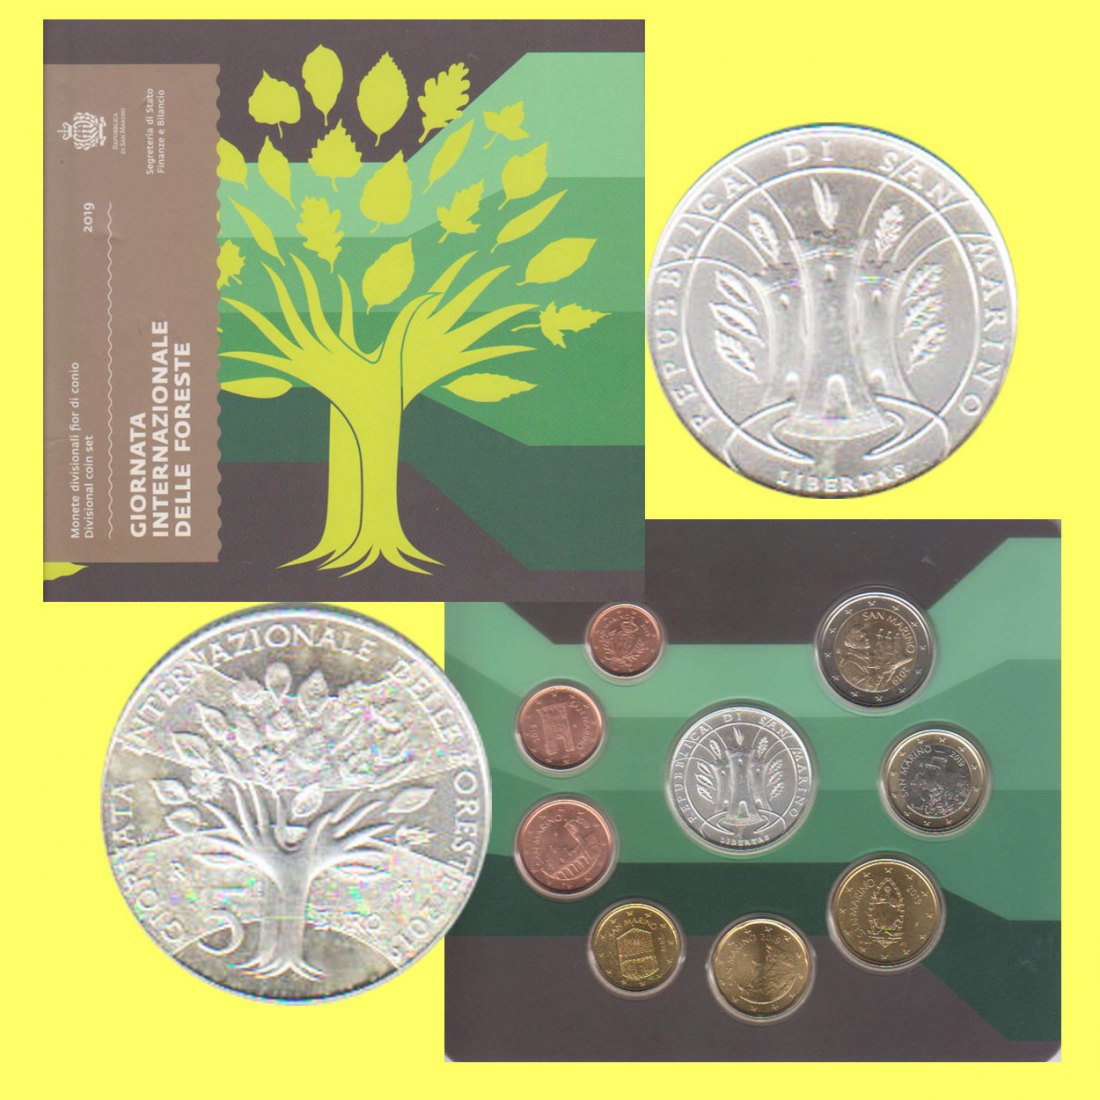  Offiz. KMS San Marino *Internationaler Tag des Waldes* 2019 mit 5€-Silbermünze nur 12.000St!   